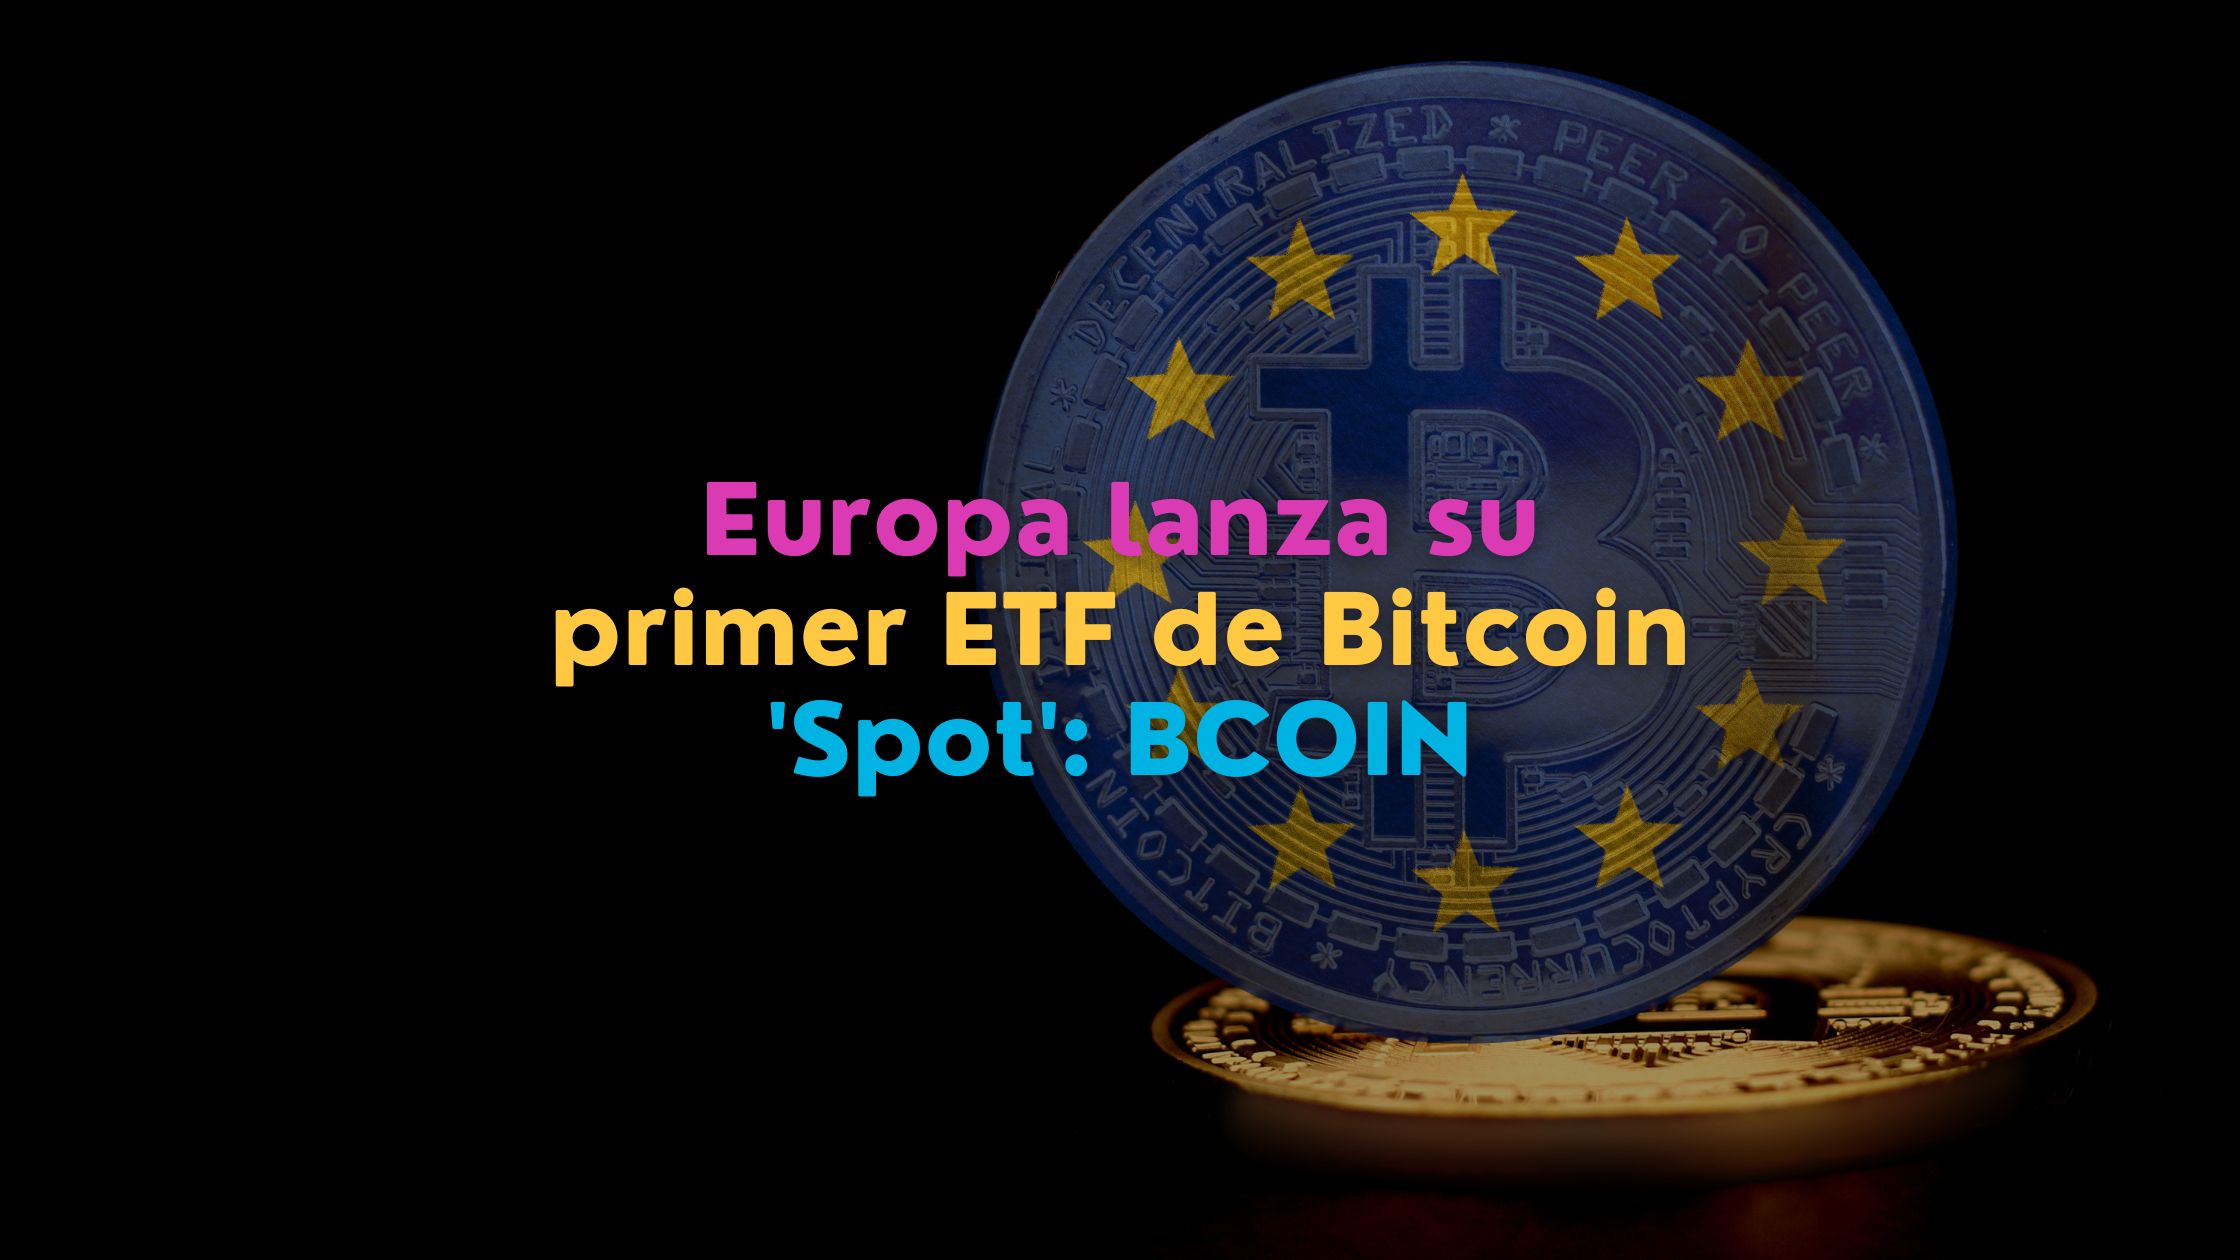 El primer fondo cotizado en bolsa (ETF) de bitcoin al contado llega a Europa. Jacobi Asset Management presenta el ETF BCOIN, regulado y respaldado por Fidelity Digital Assets. Conoce cómo este movimiento adelanta a Europa en la inversión en bitcoin.